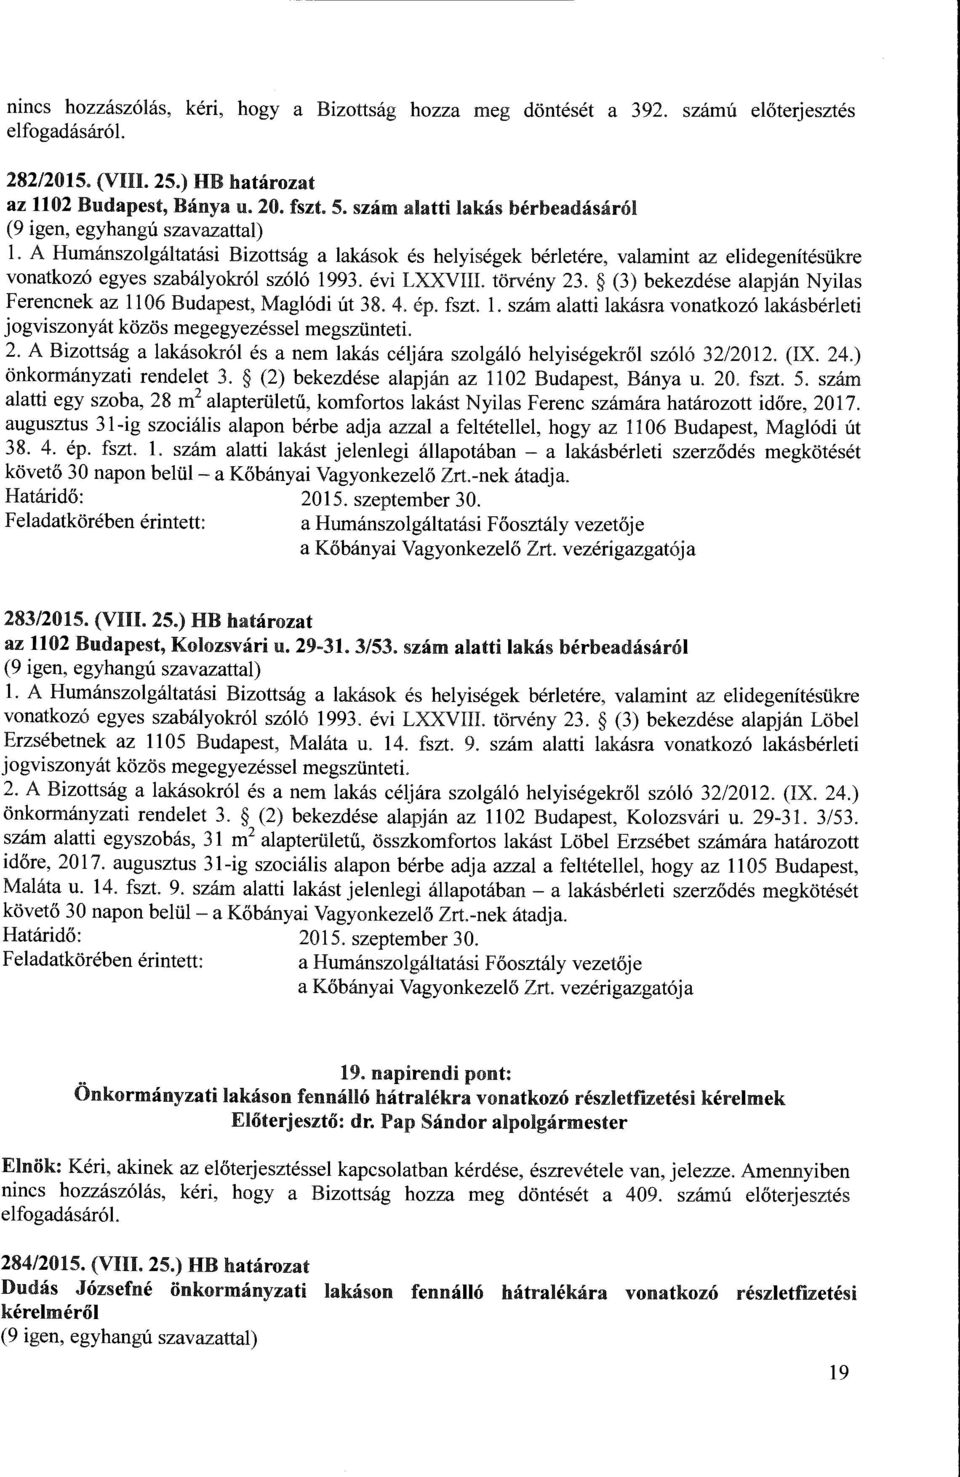 (3) bekezdése alapján Nyilas Ferencnek az 1106 Budapest, Maglódi út 38. 4. ép. fszt. l. szám alatti lakásra vonatkozó lakásbérleti jogviszonyát közös megegyezéssel megszünteti. 2.